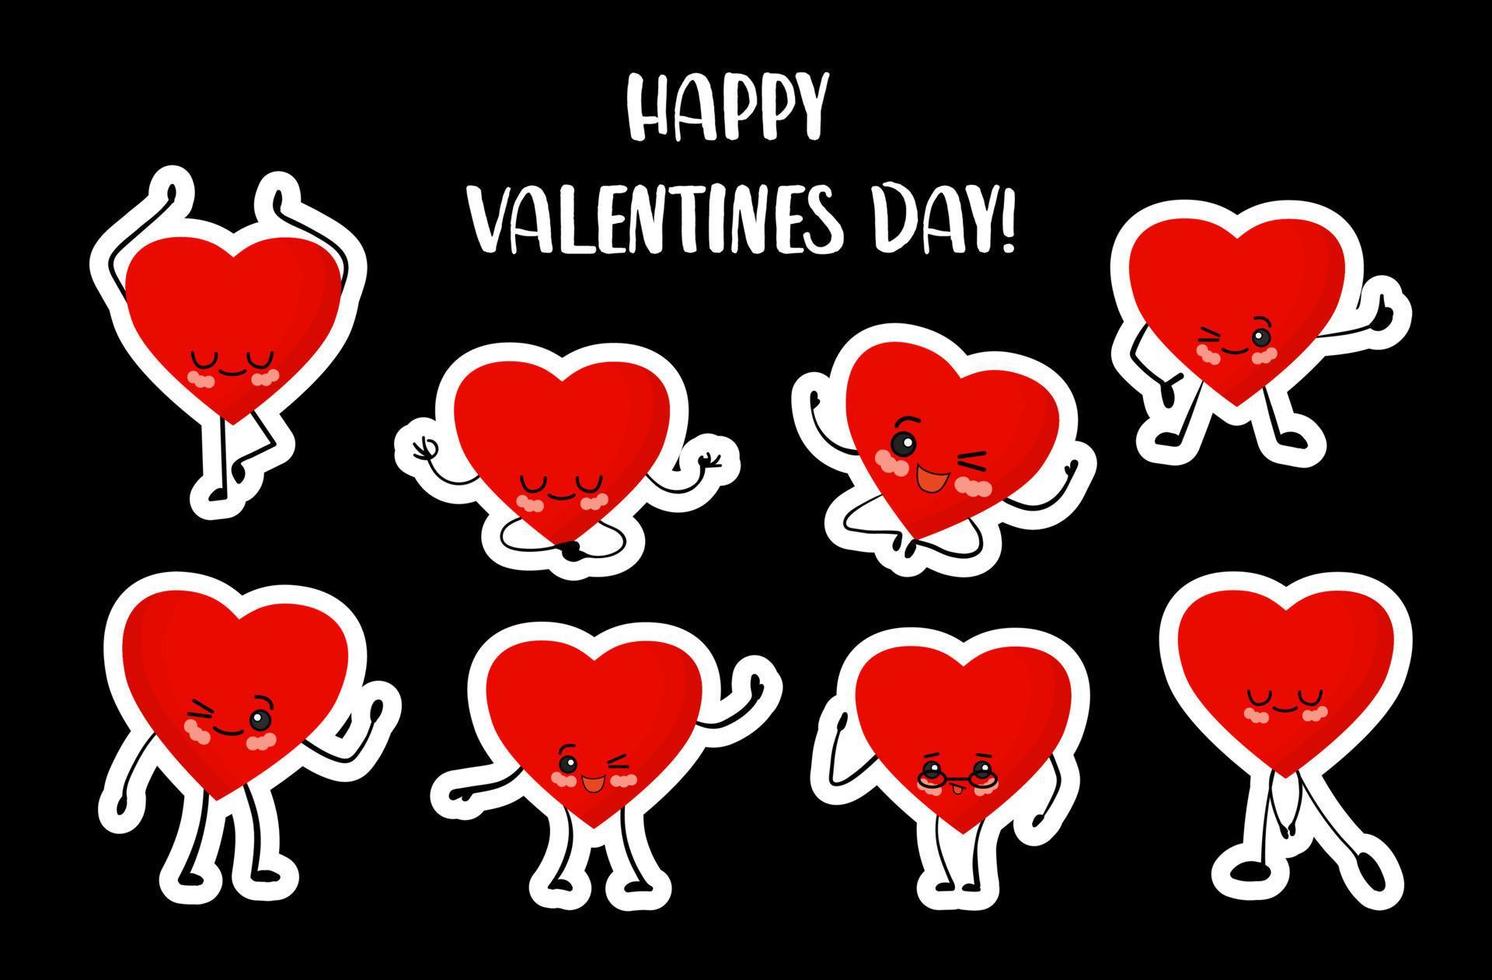 día de San Valentín. conjunto de pegatinas sobre un fondo blanco. lindos corazones de dibujos animados kawaii con ojos, brazos y piernas. carácter alegre del corazón.. vector